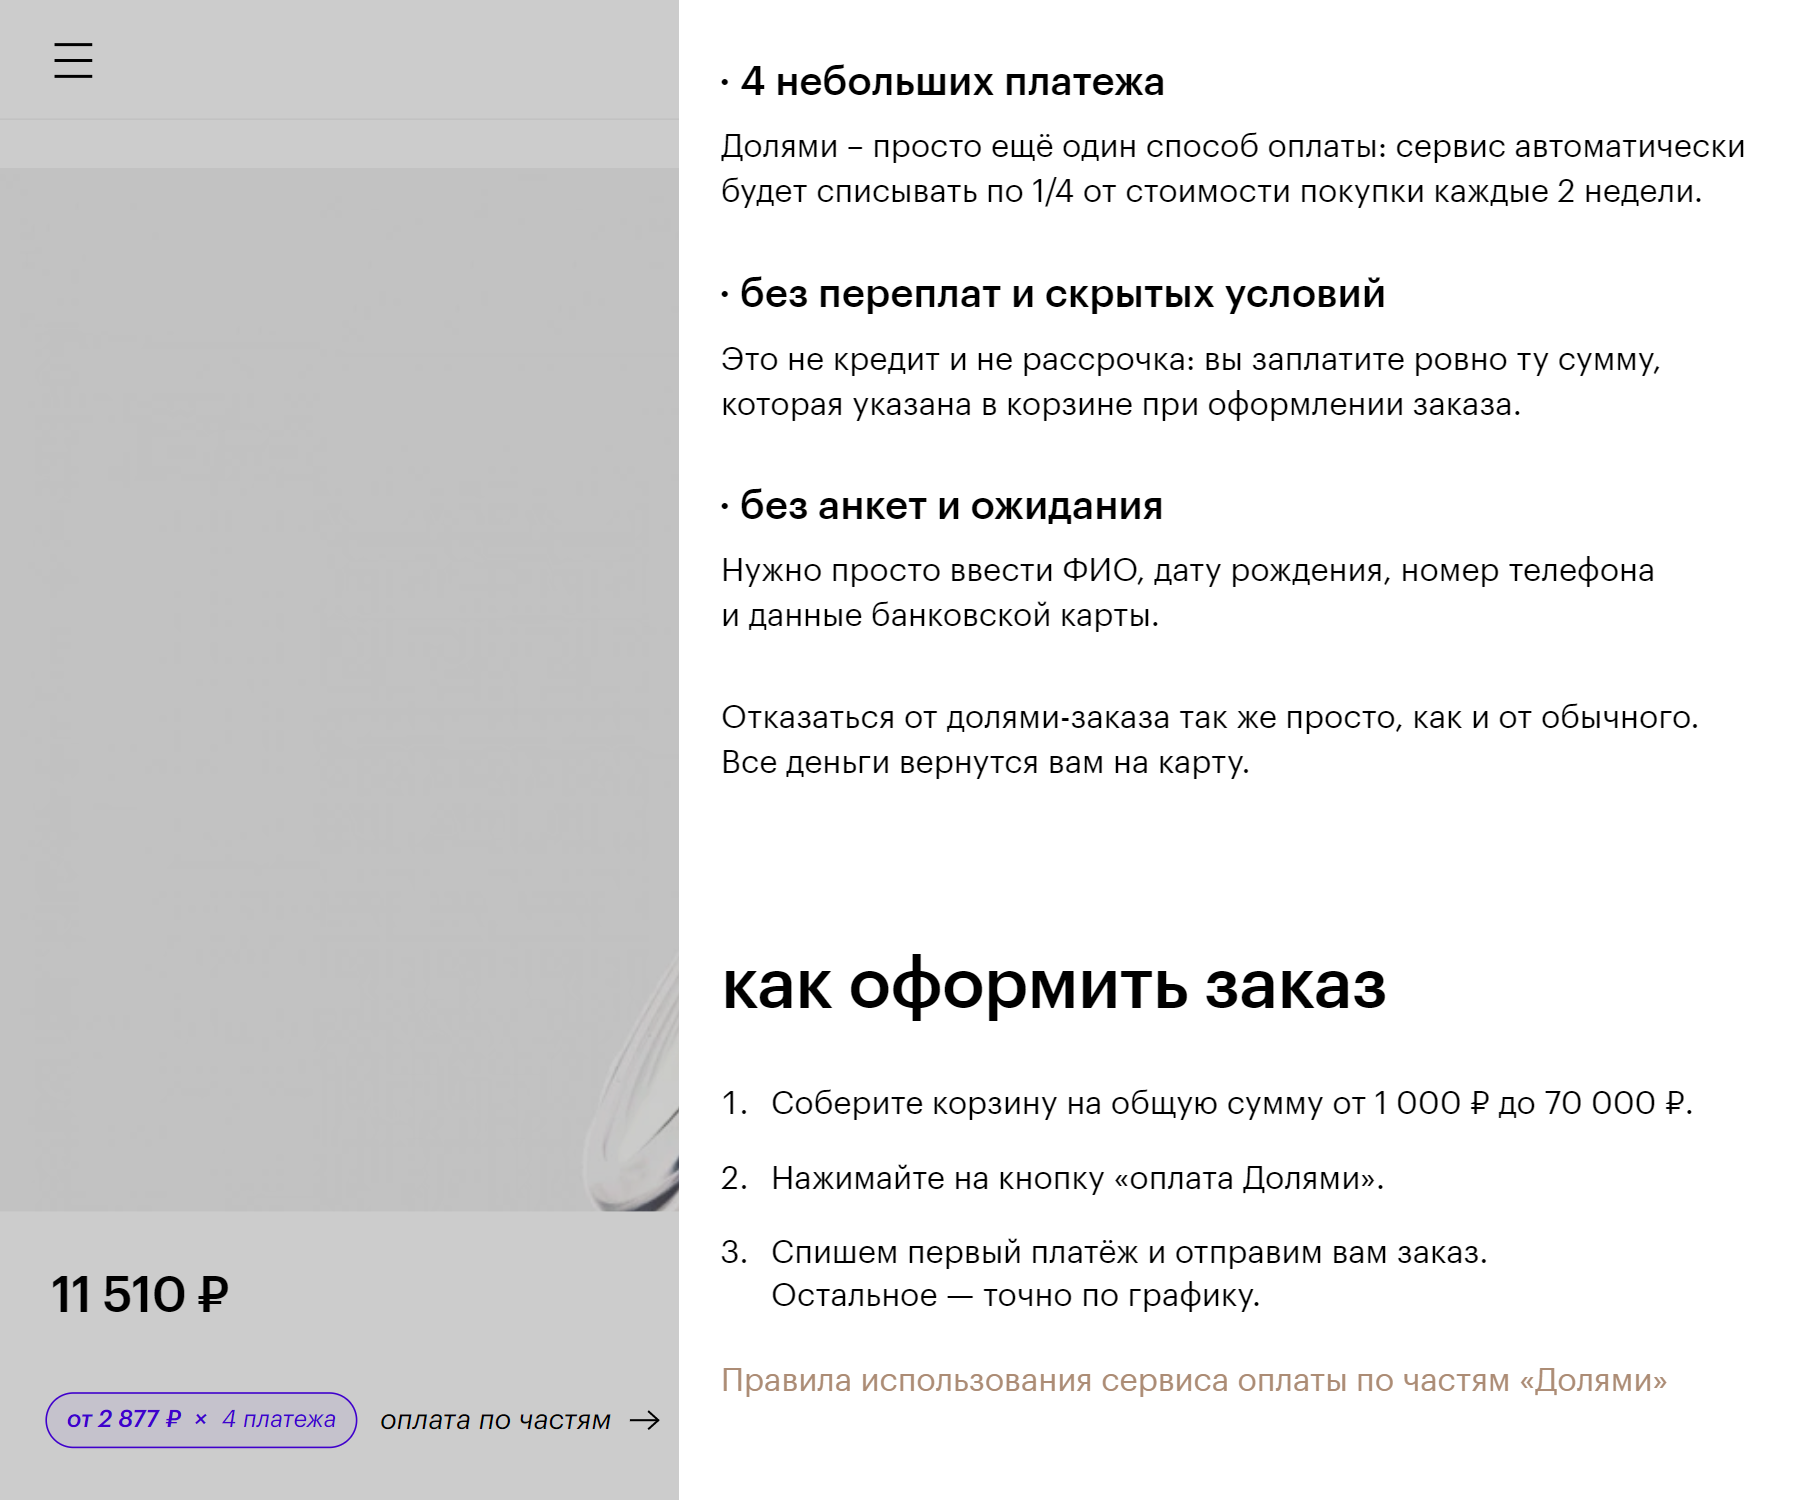 Так выглядит описание оплаты через сервис «Долями» на сайте «Золотого яблока». Источник: goldapple.ru